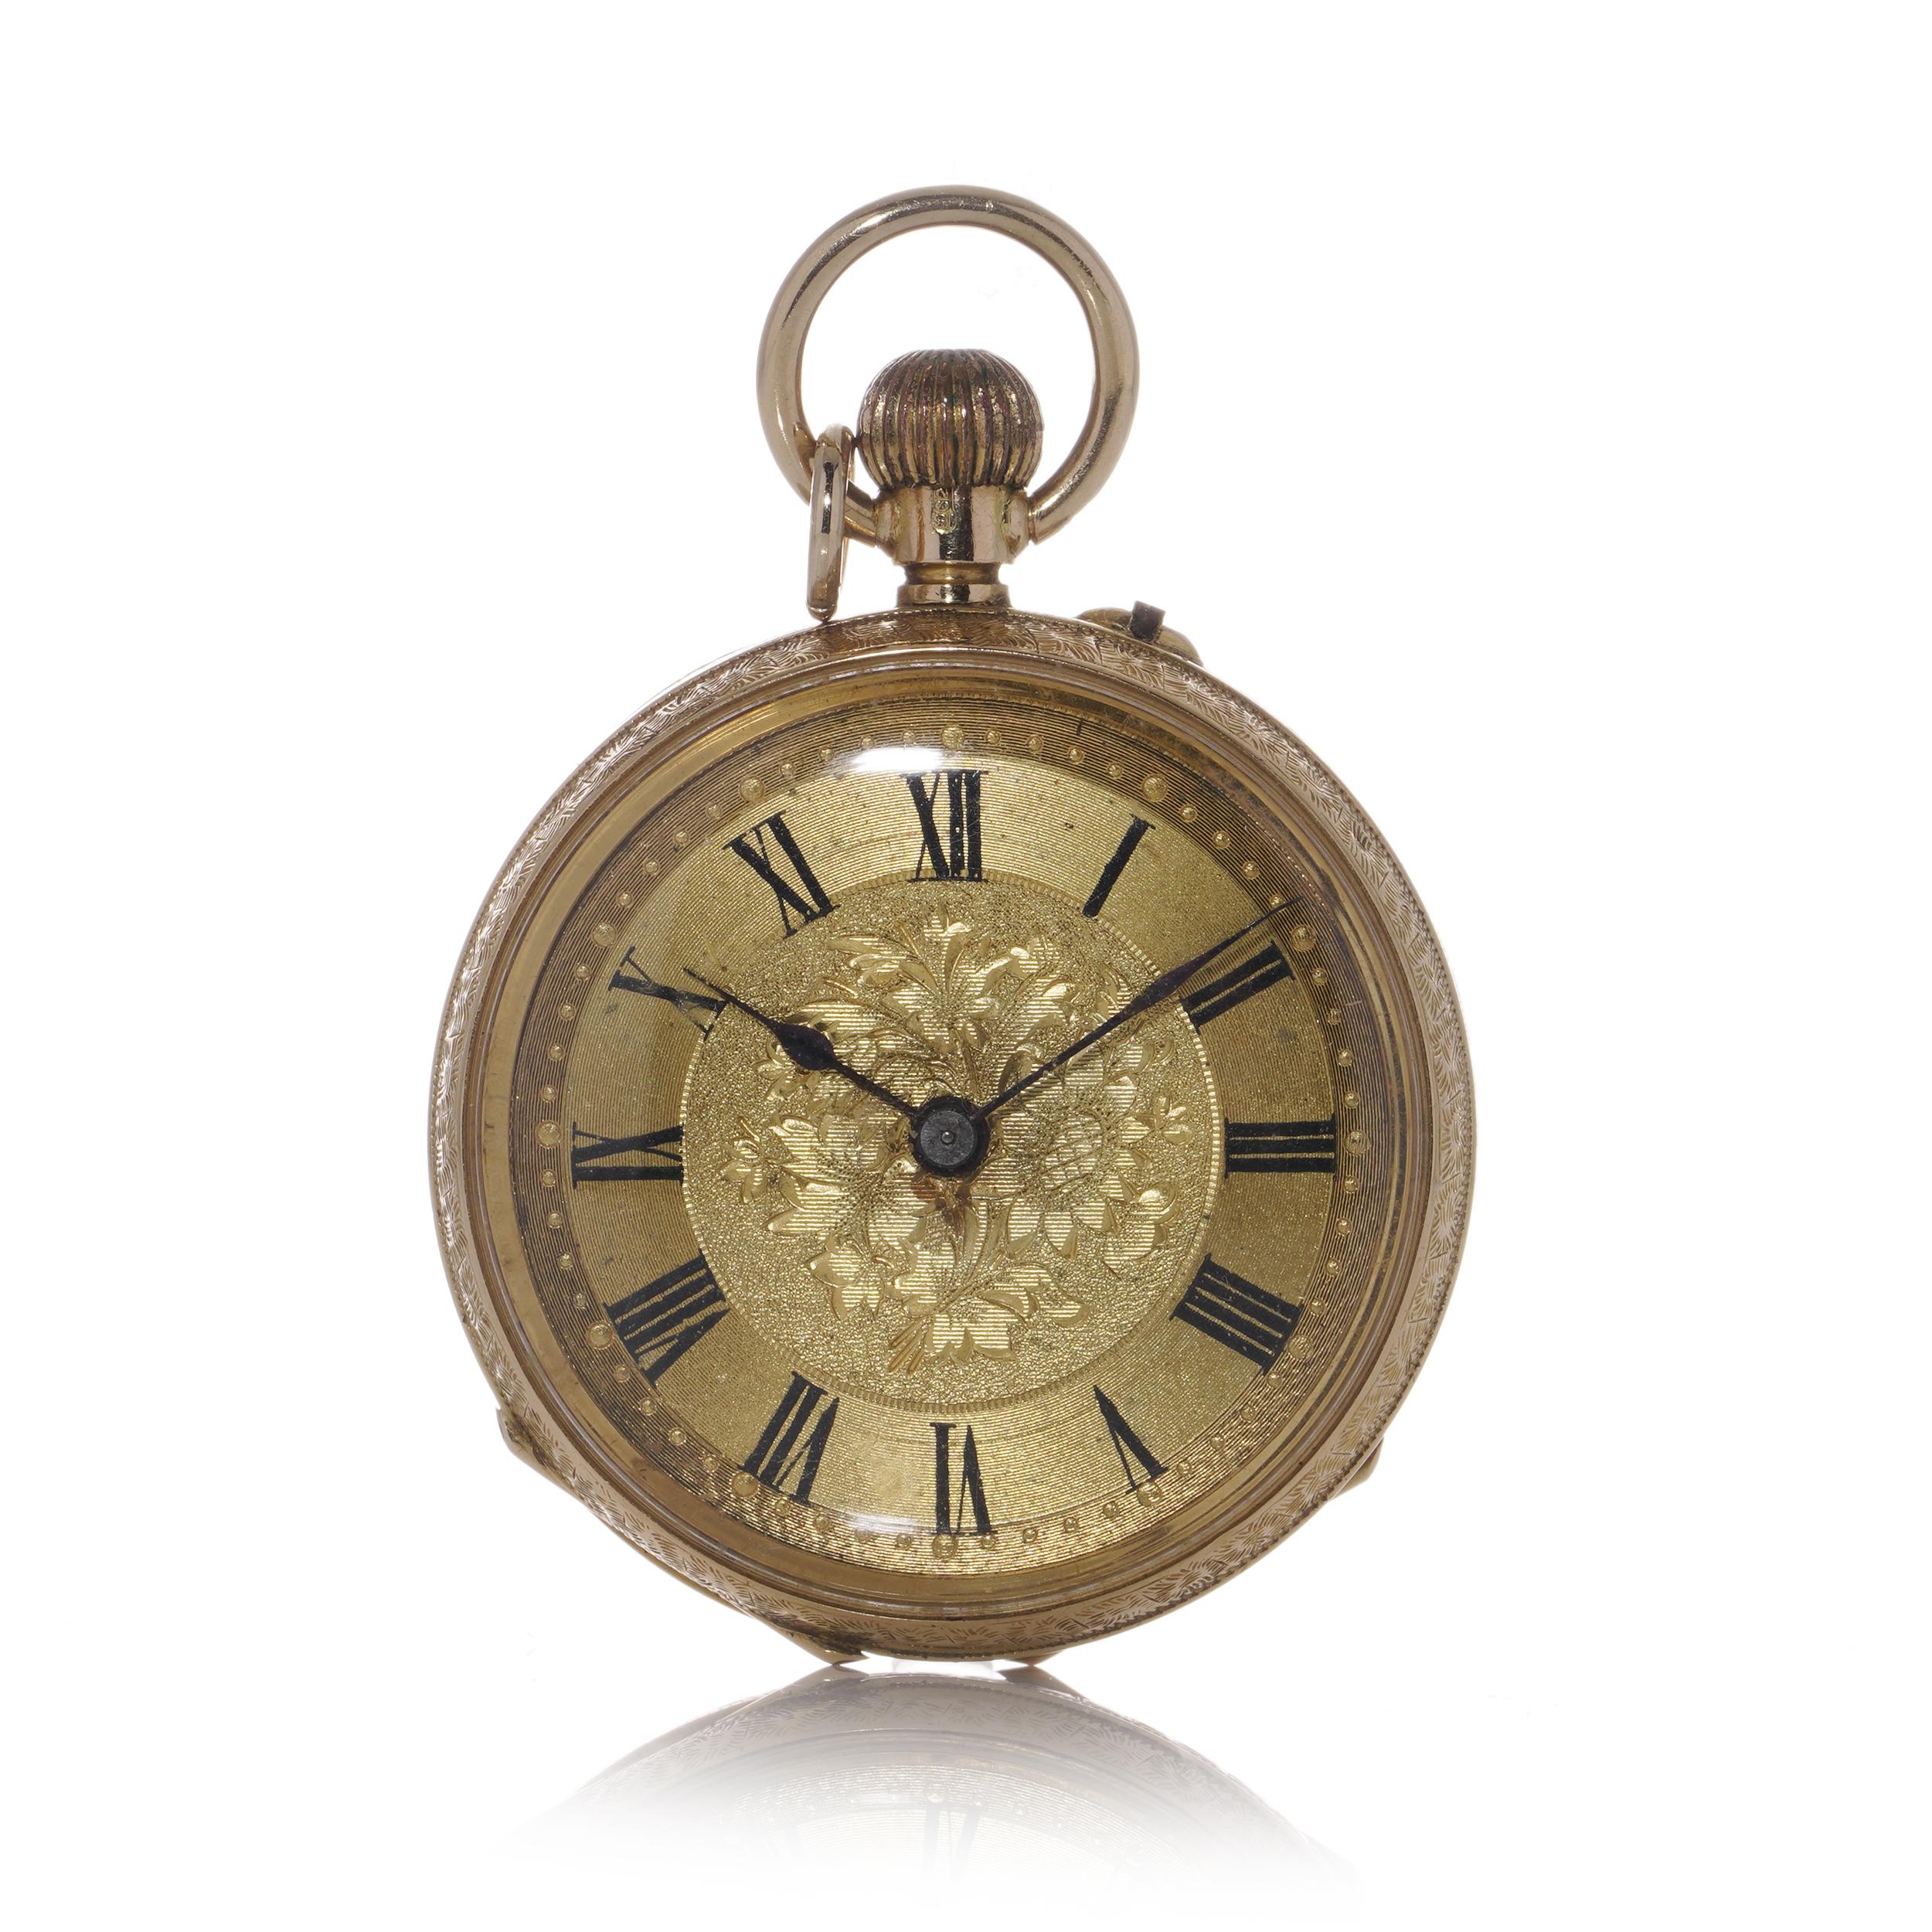 Antike Taschenuhr mit offenem Zifferblatt aus 15 Karat Gold.
Hergestellt in England, London, ca. 1900-1910
Vollständig gestempelt 15KT Gold mit London Import Punzen.

Die Ganggenauigkeit der Uhren ist nicht überprüft worden. 
Es wird empfohlen, sie